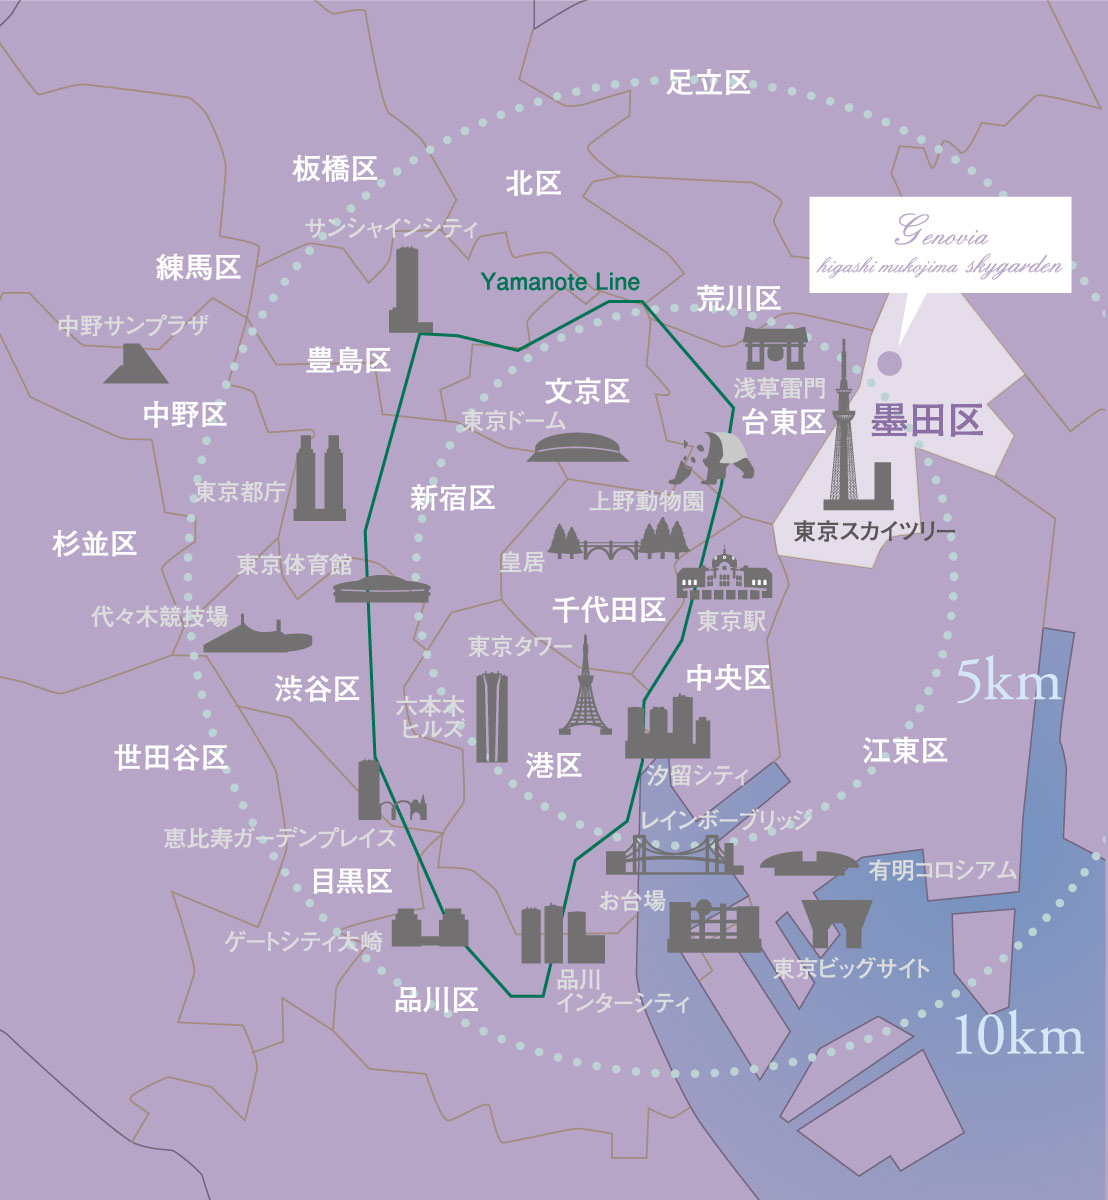 距離「東京」車站僅約6km的範圍。擁有成為將來資產價值的期待。